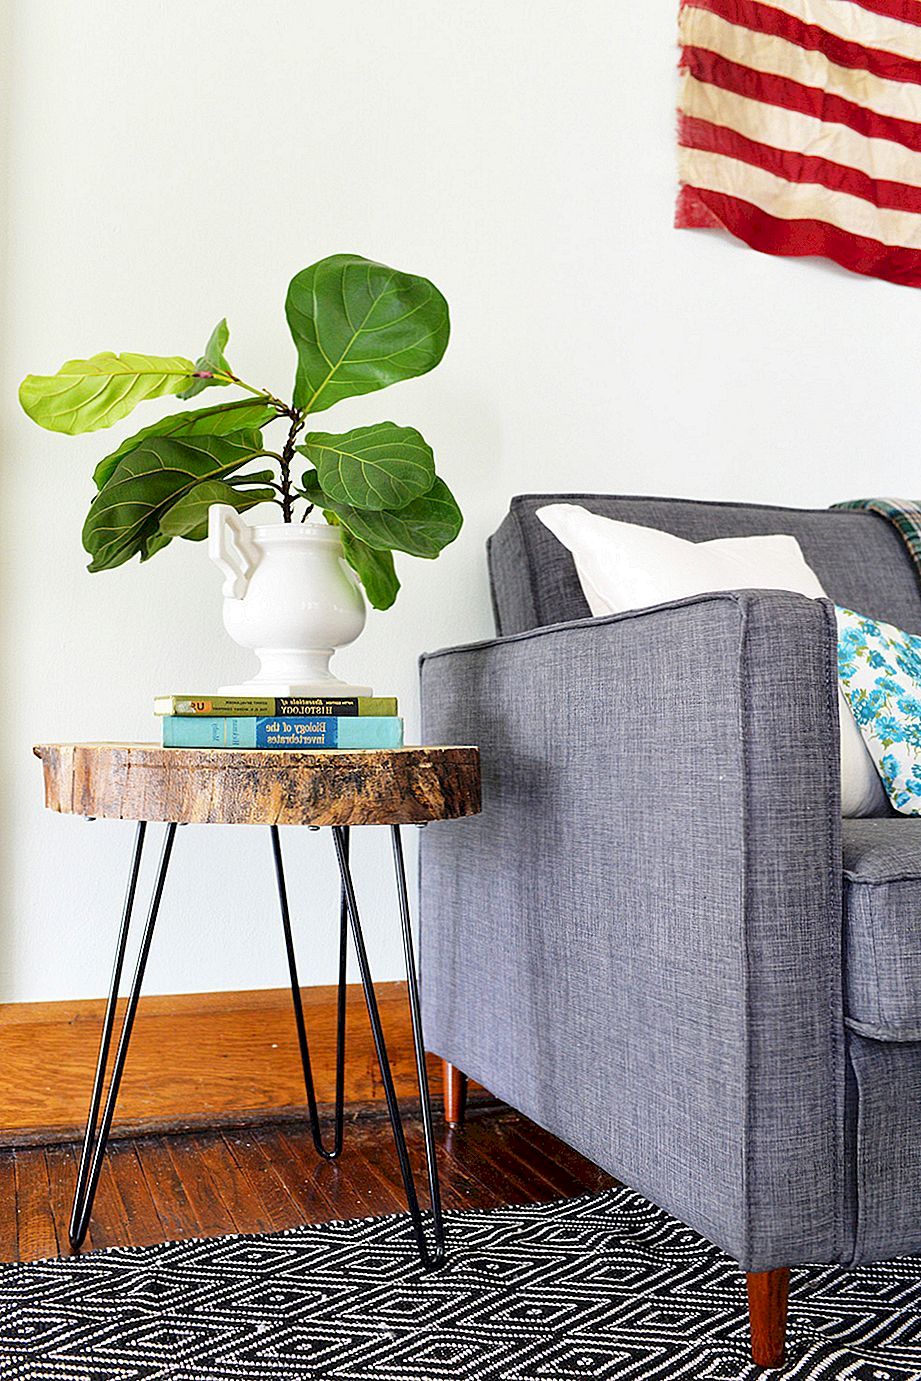 DIY Home Decor ideeën die uw huis nu kunnen verbeteren